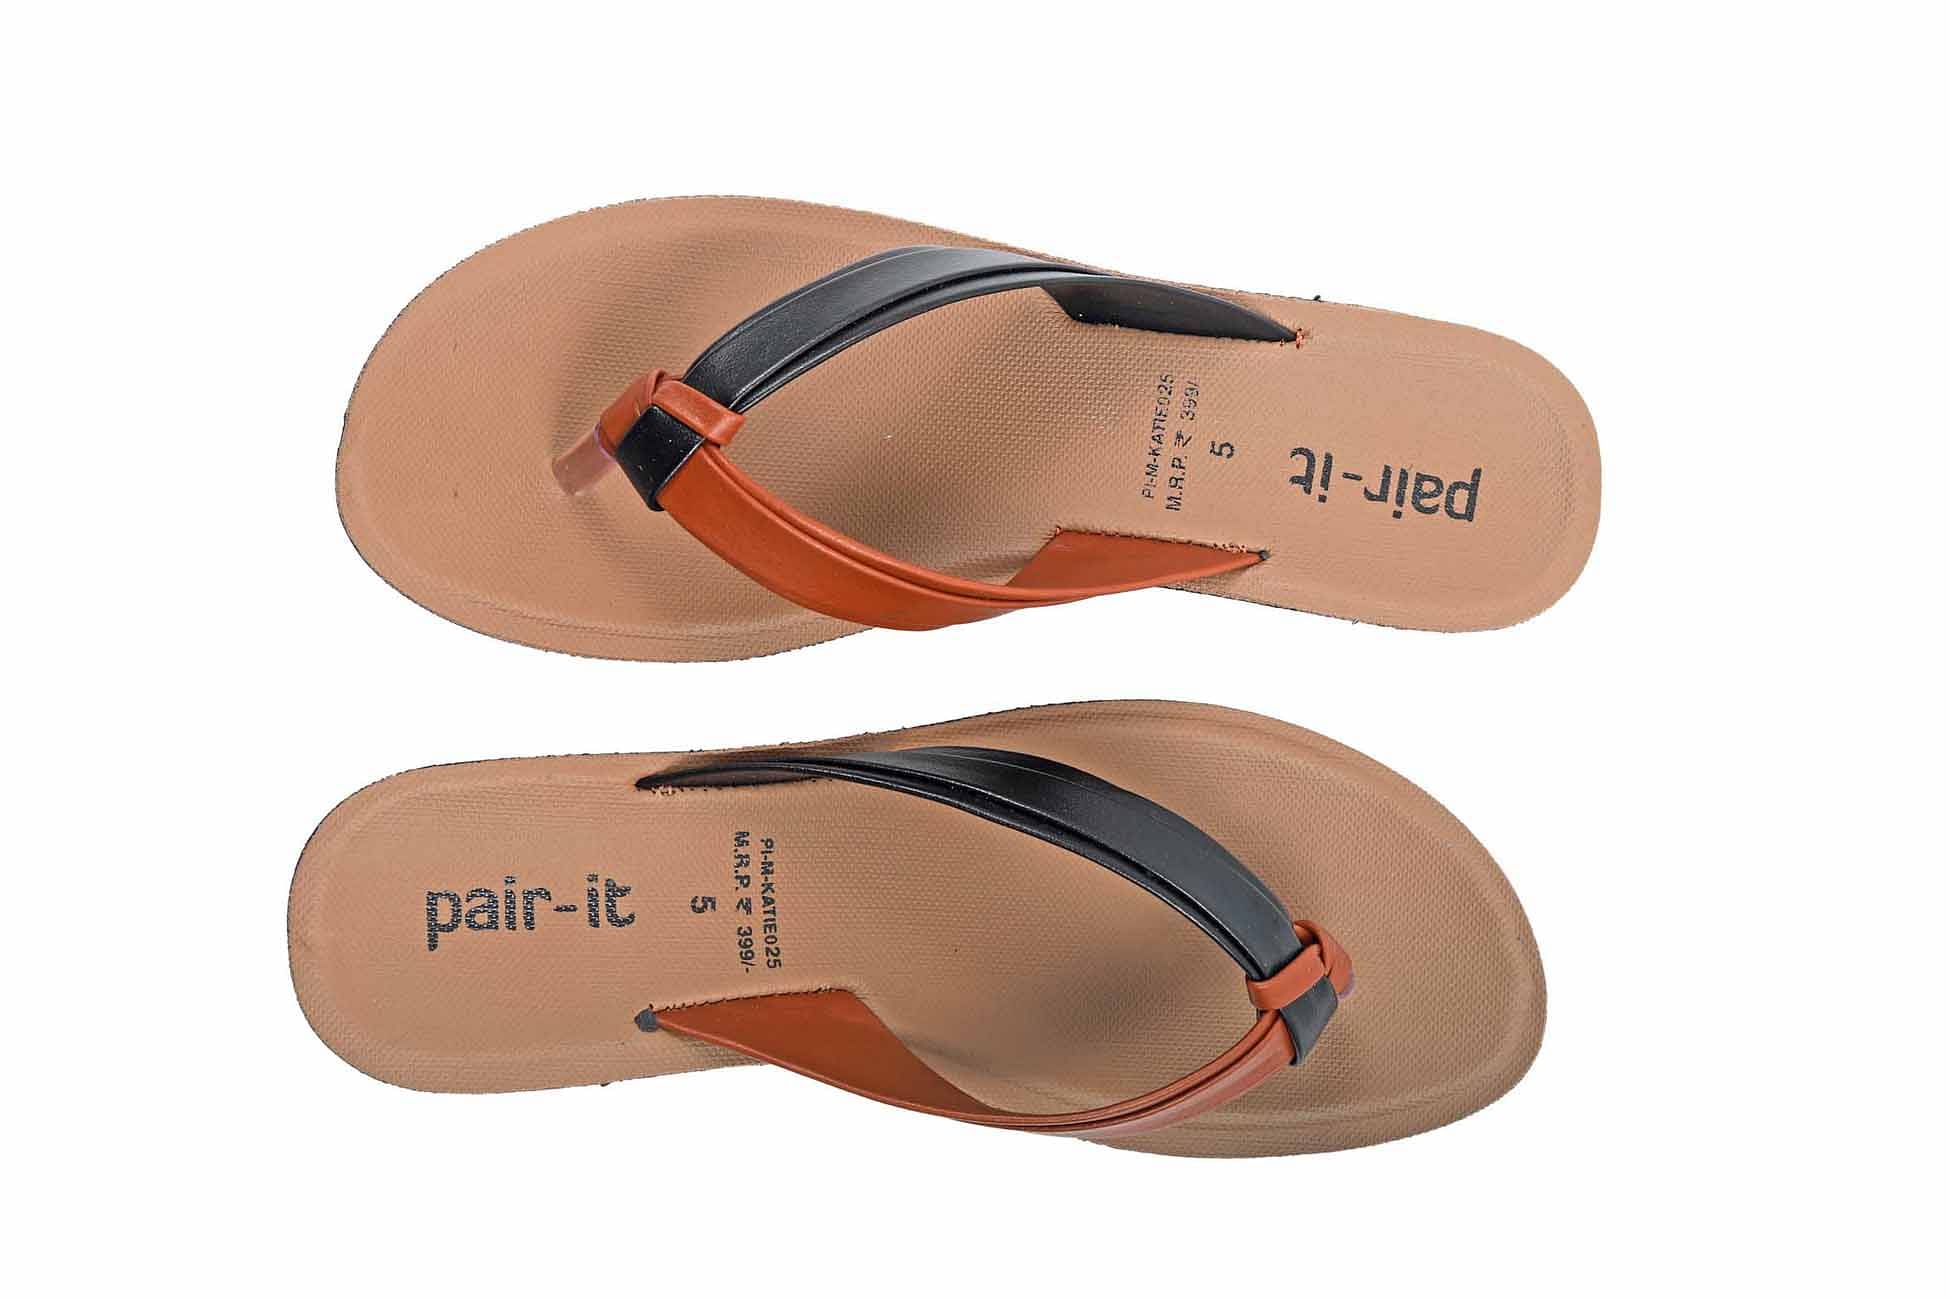 Pair-it Ladies Slippers-PI-KATIE025